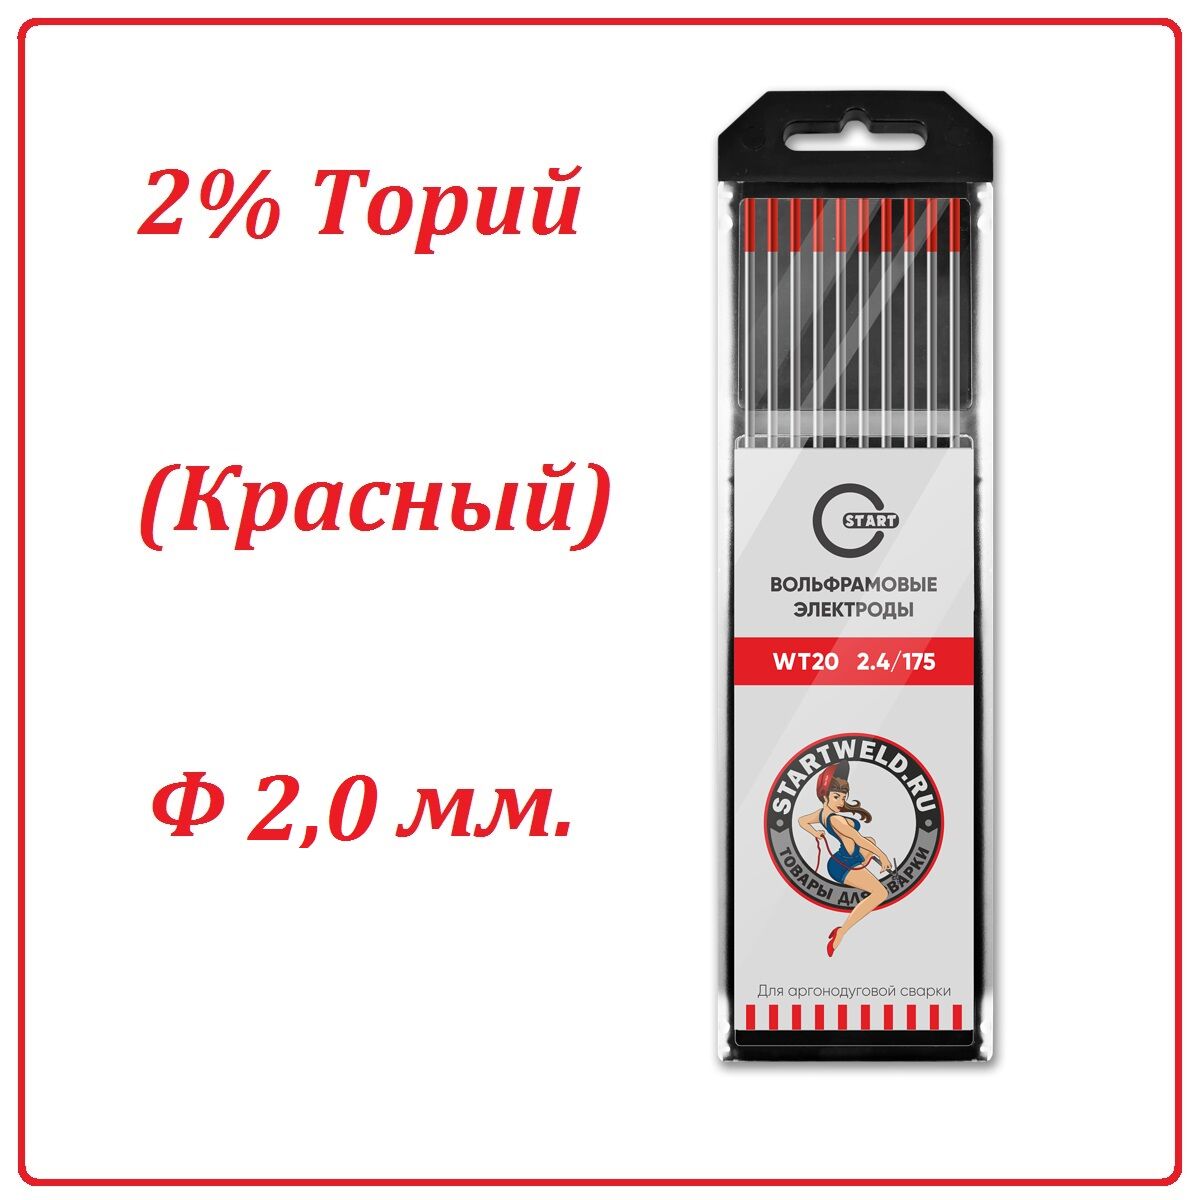 Вольфрамовый электрод WT 20 (2,0 мм. Красный 2% диоксида тория)